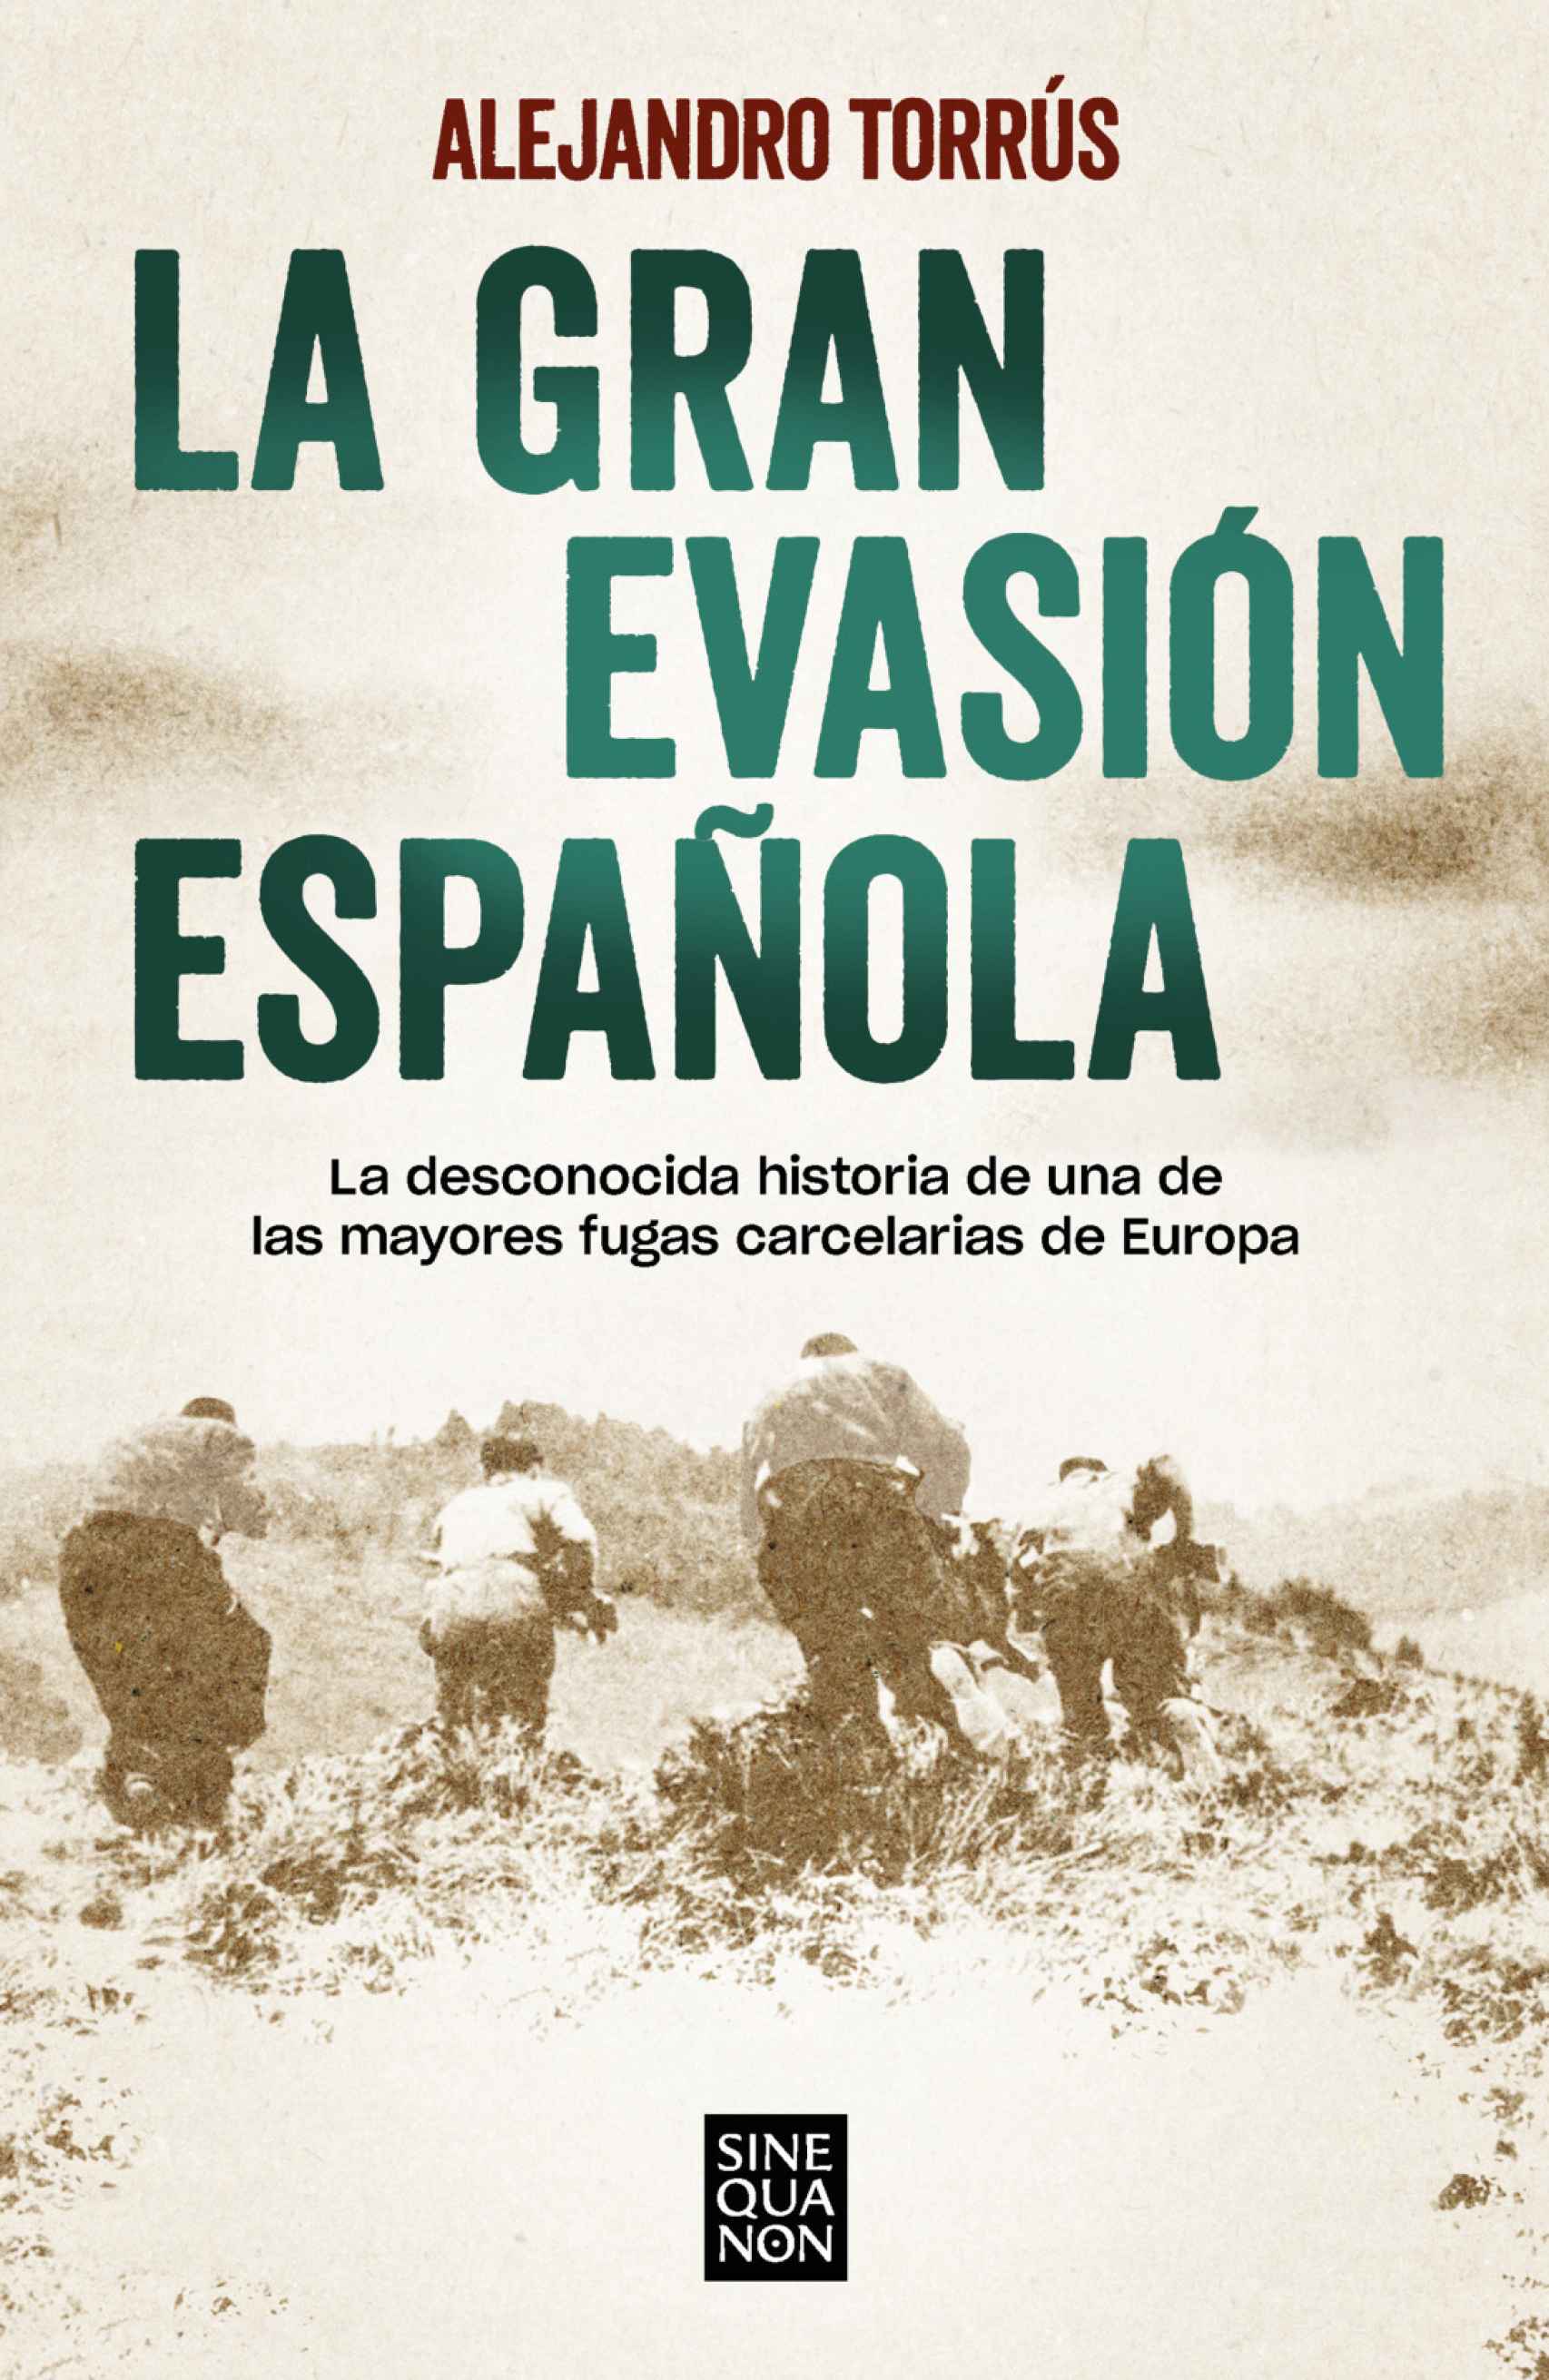 Portada de 'La gran evasión española'.